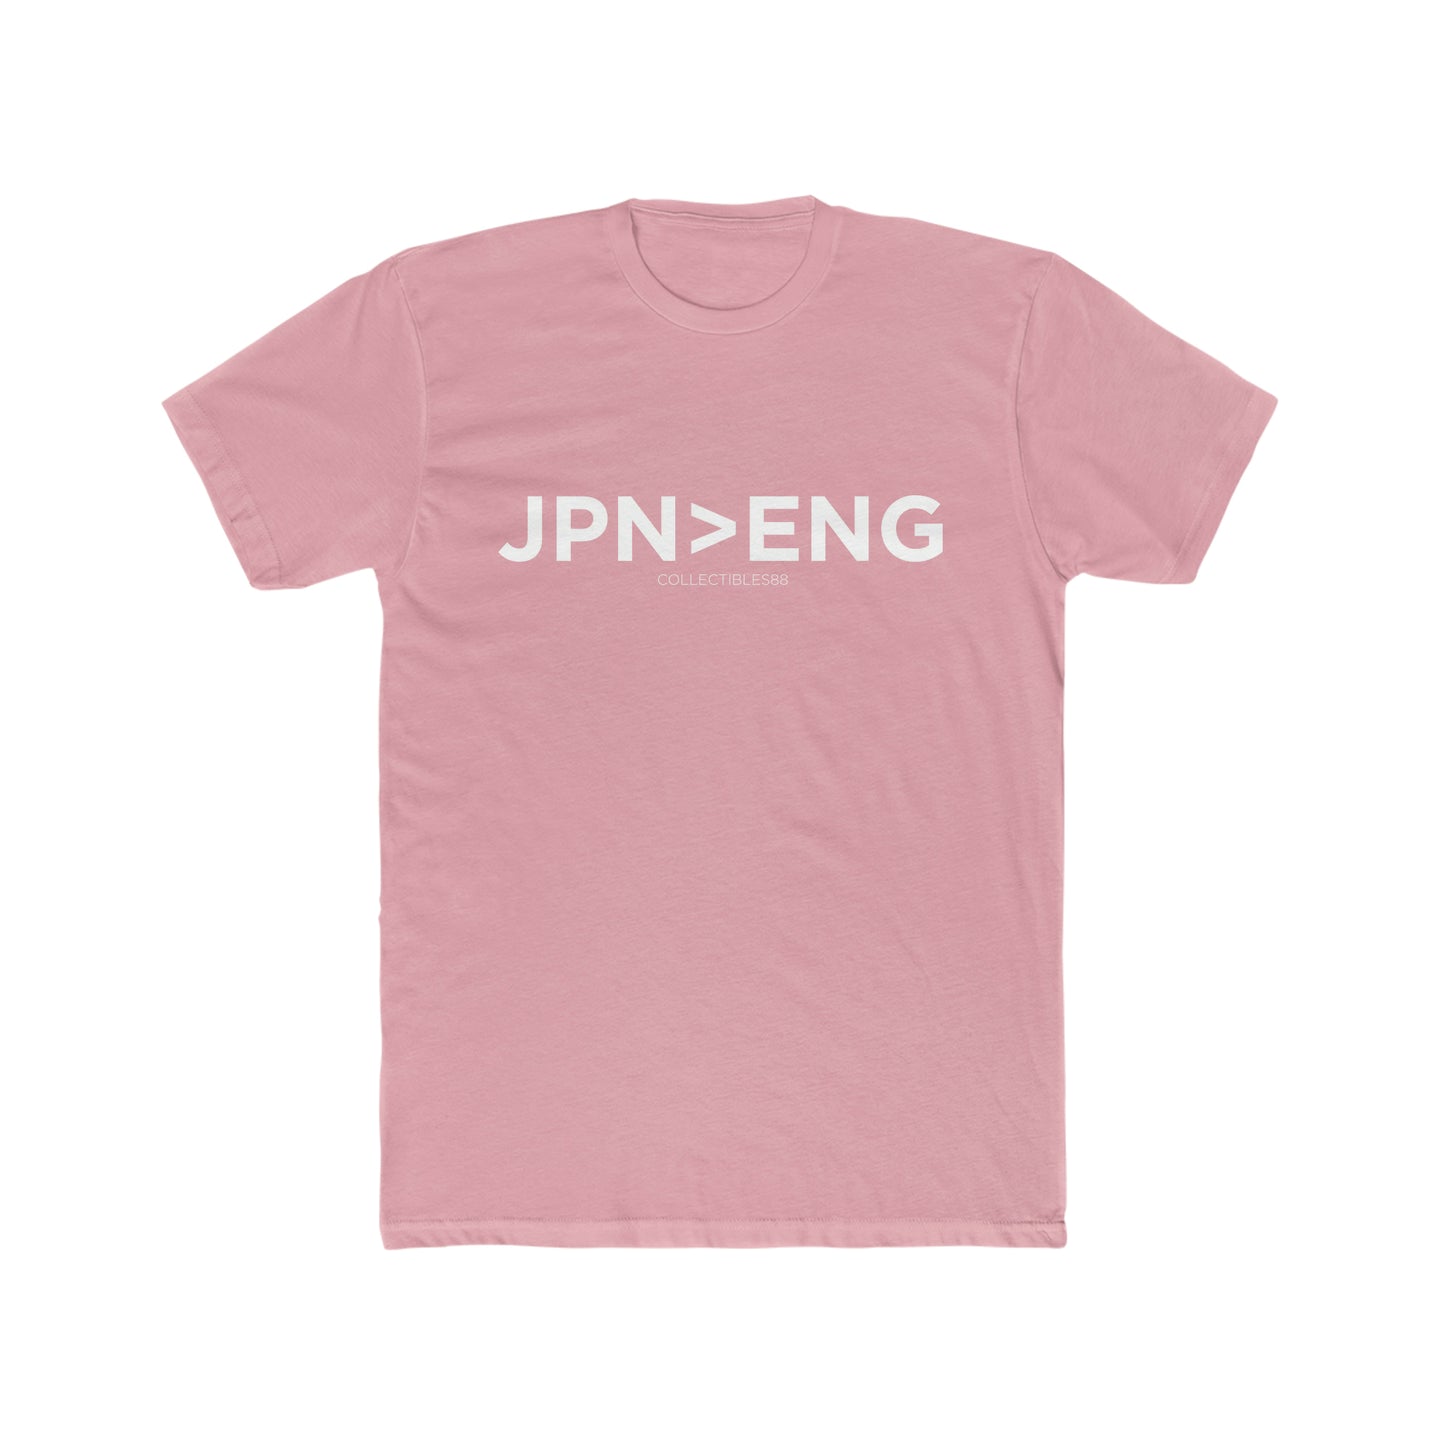 JPN>ENG Tee (white font)